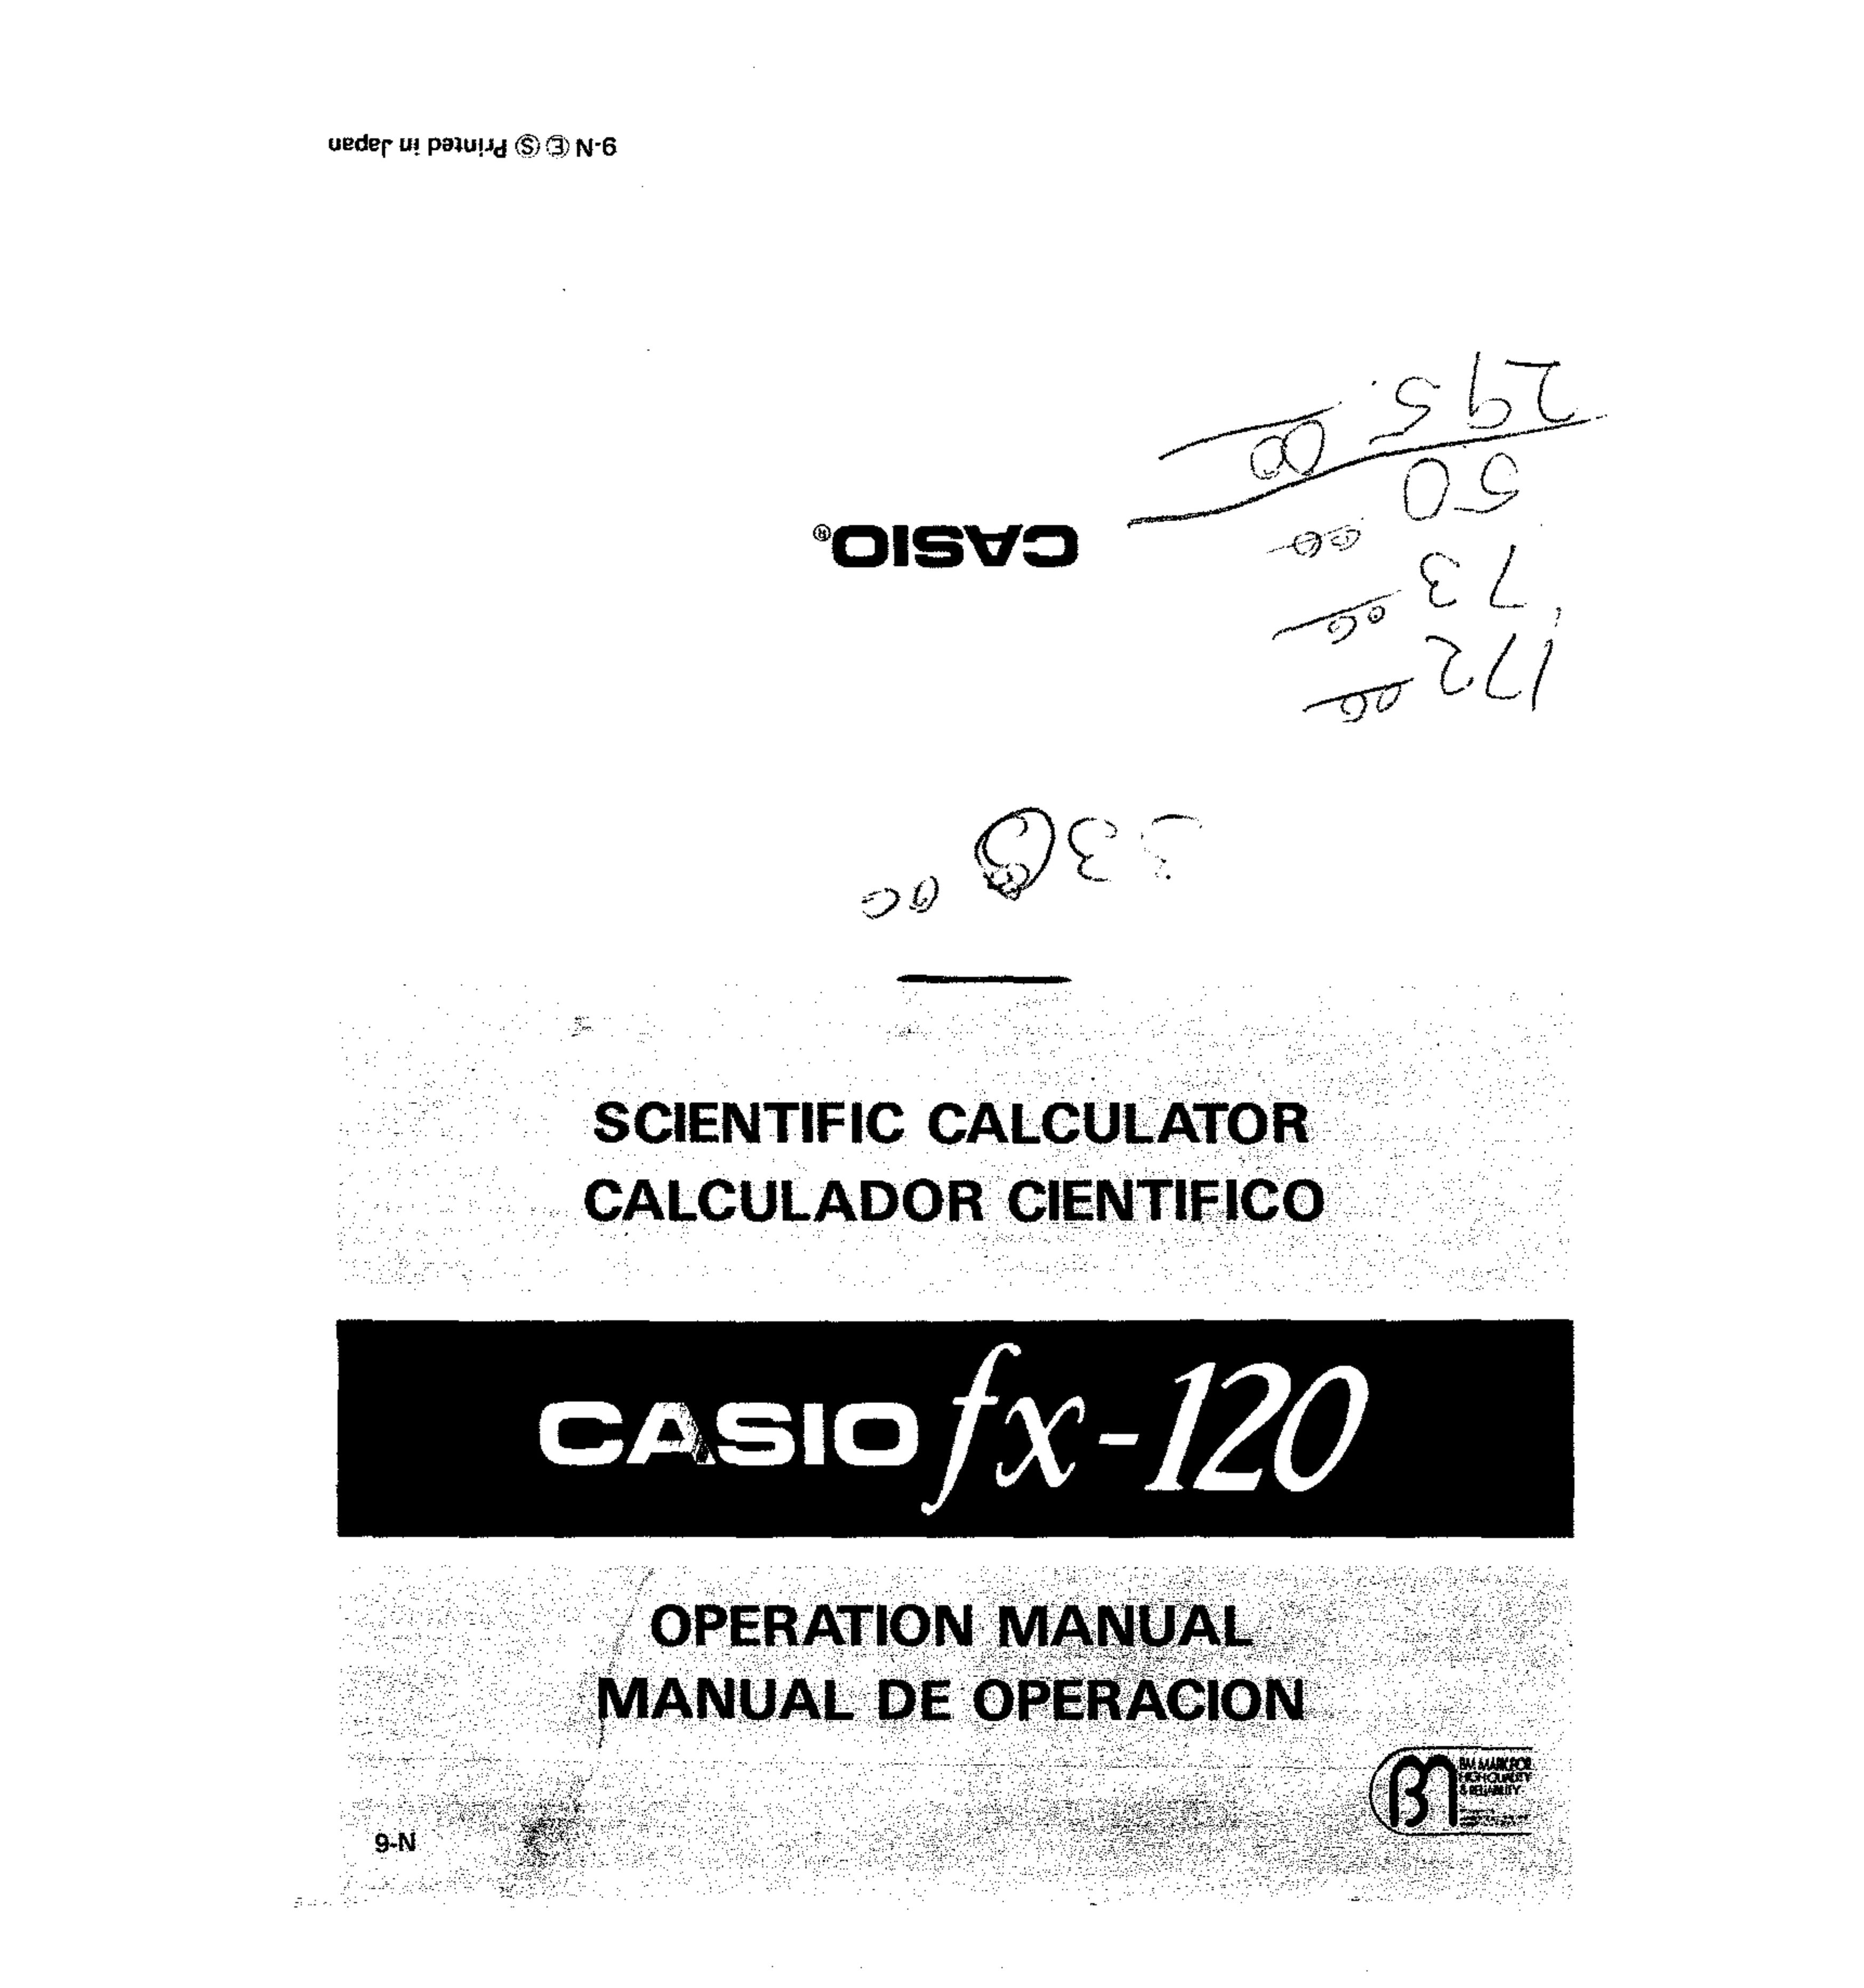 Casio fx-120 Calculator User Manual